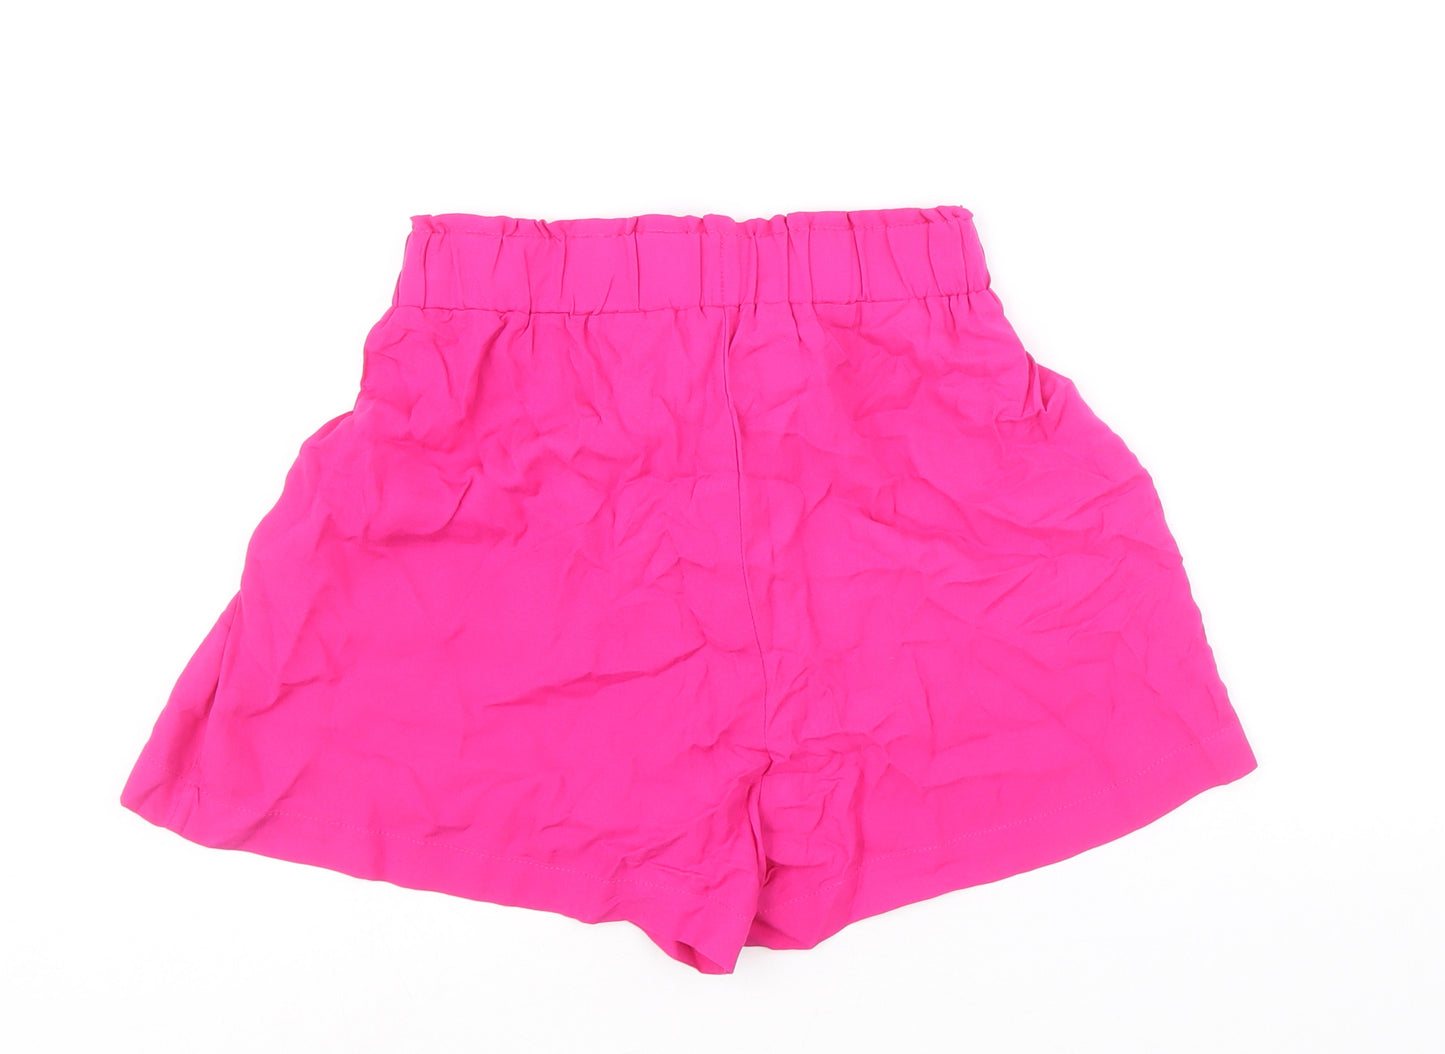 Primark Womens Pink Viscose Basic Shorts Size 10 Regular Drawstring